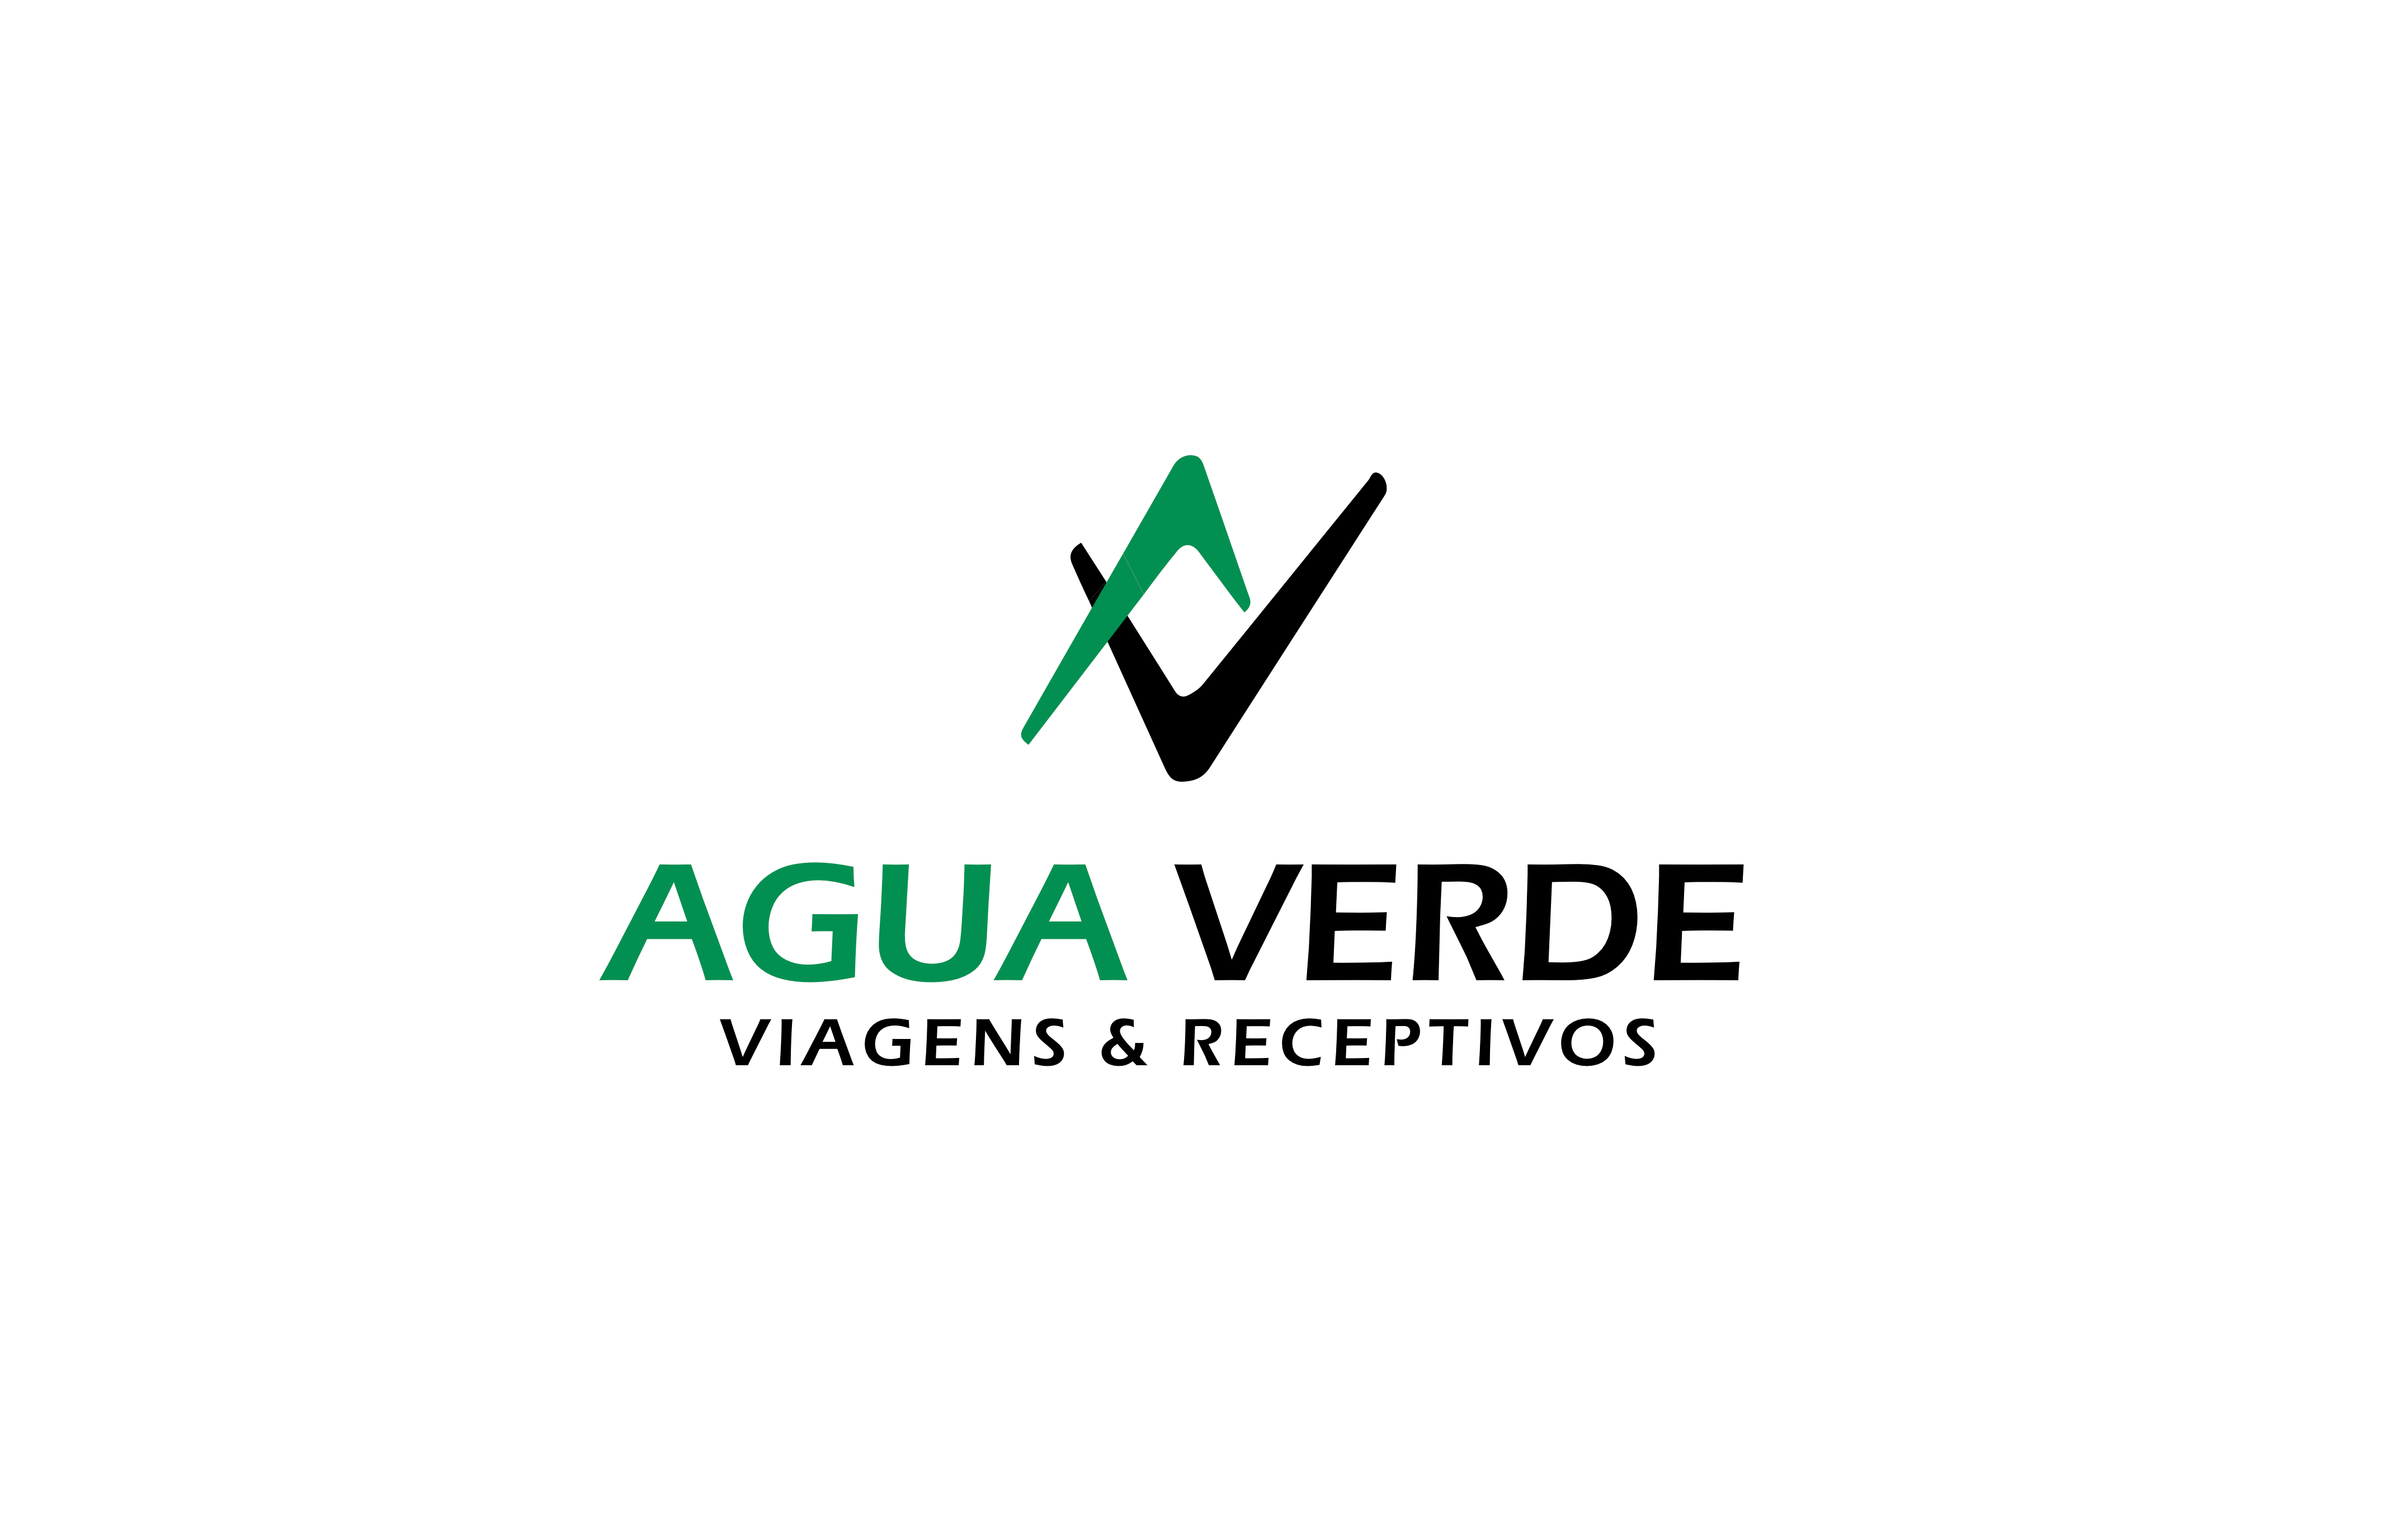 Agua Verde Viagens & Receptivos logo